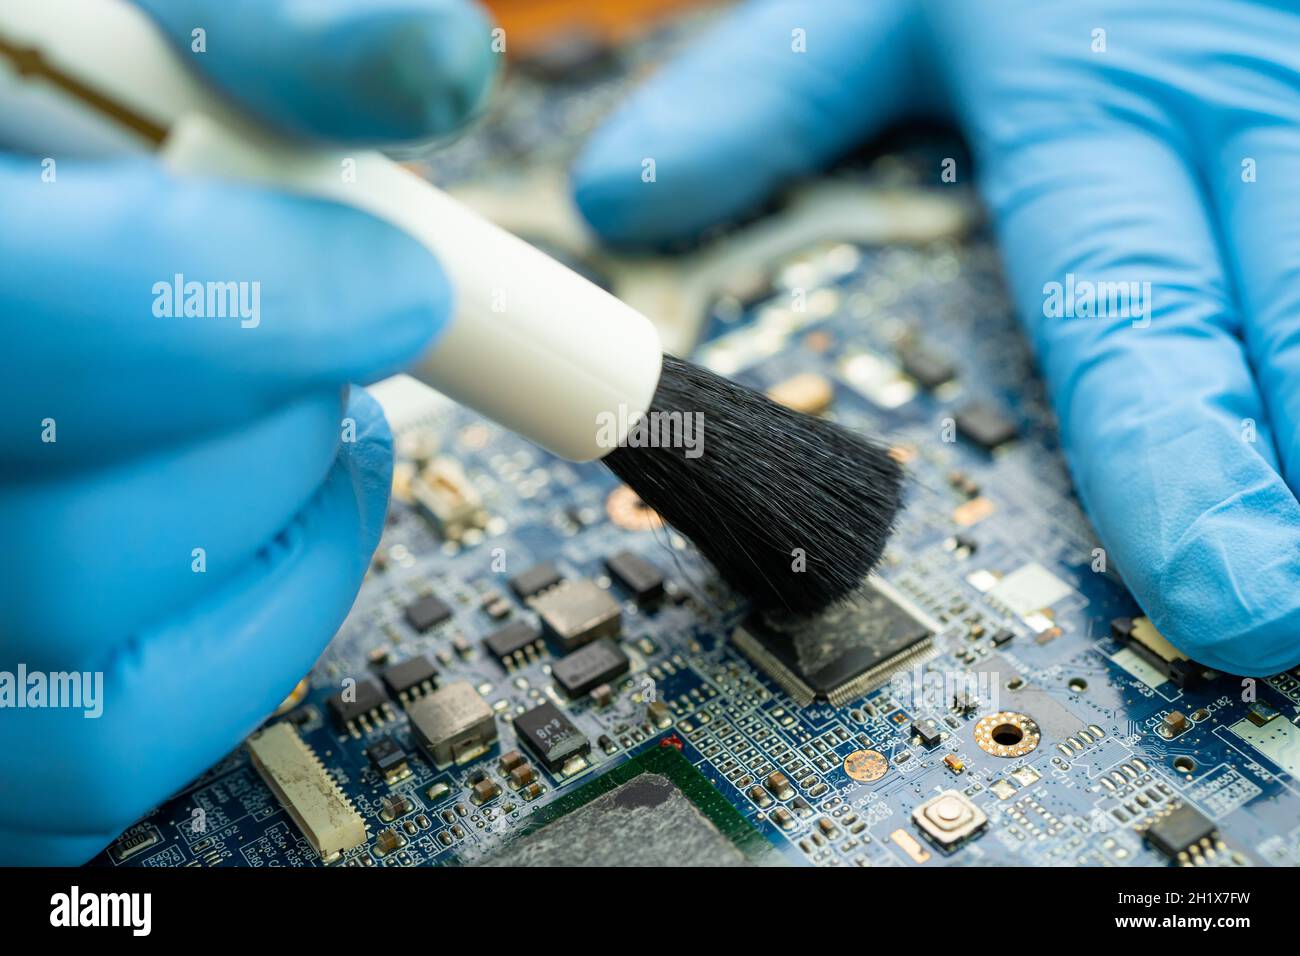 Le technicien utilise une brosse et une boule de soufflerie d'air pour nettoyer la poussière de l'ordinateur de la carte de circuit imprimé. Réparer la technologie de mise à niveau et de maintenance. Banque D'Images